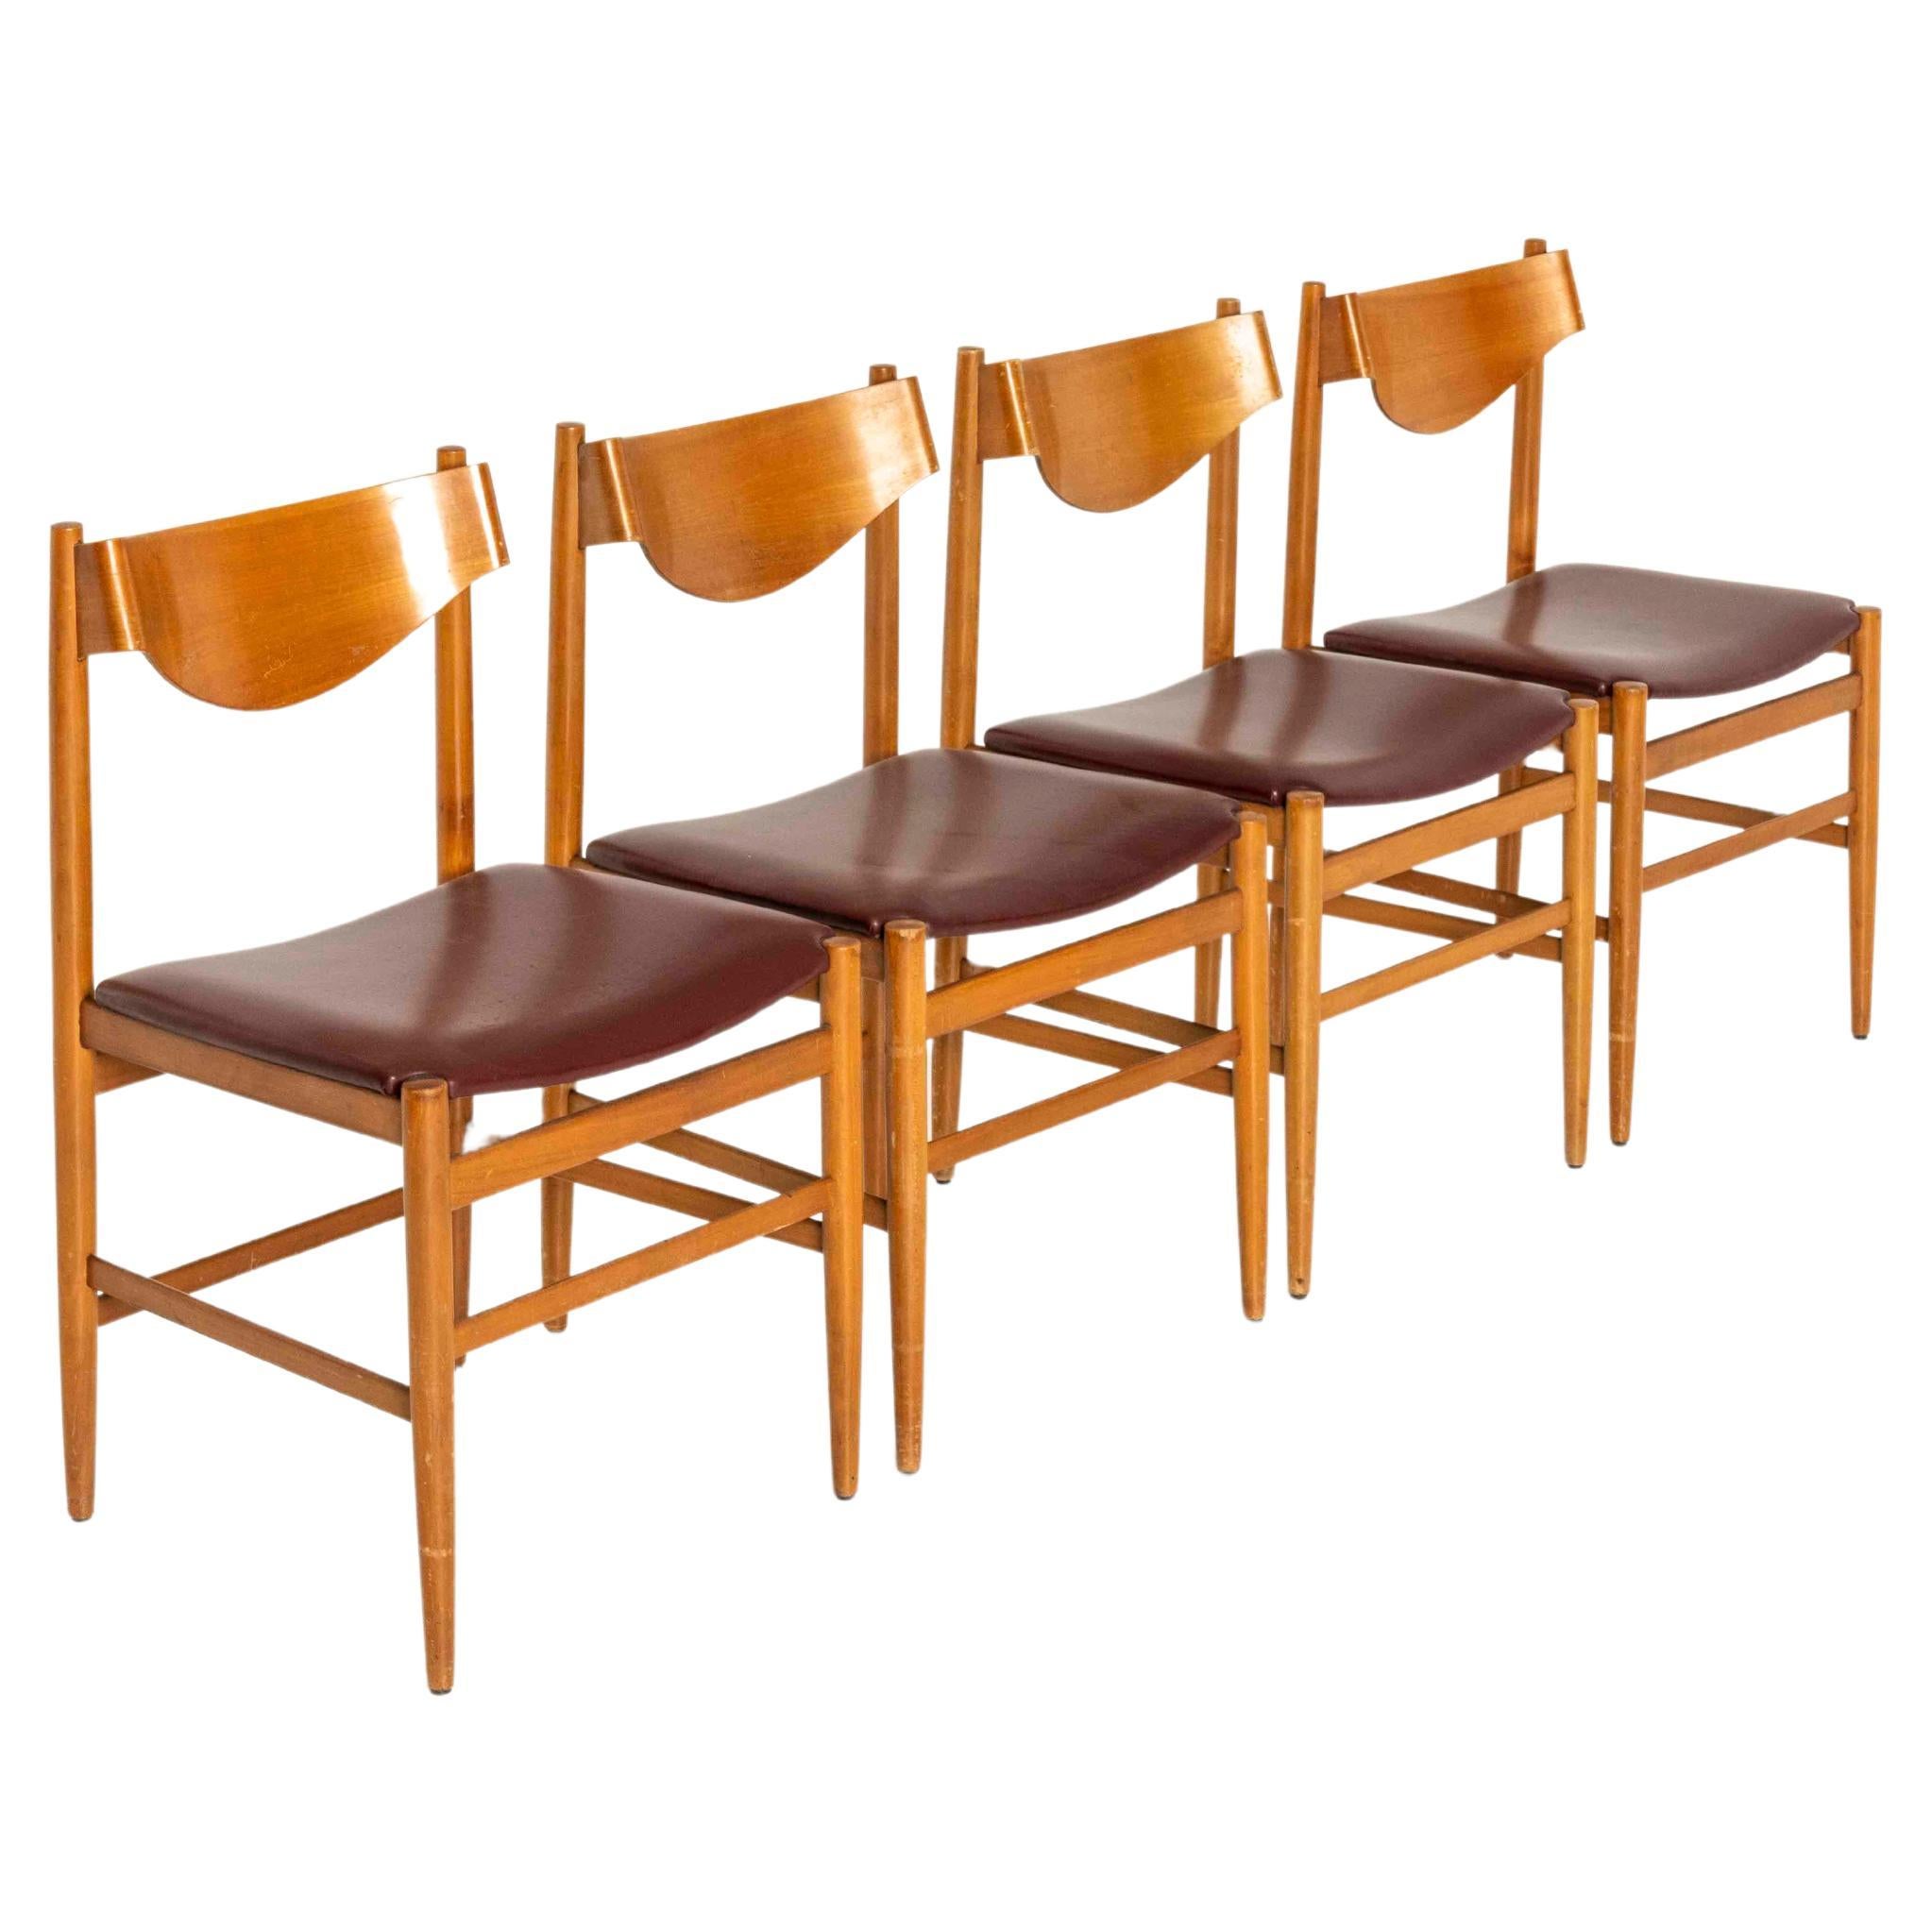 Ensemble de quatre chaises à manger par Gianfranco Frattini pour Cassina des années 1960. Les chaises sont en teck avec un dossier en contreplaqué moulé et un (faux) cuir rouge. Ils sont très esthétiques et en bon état, avec une usure normale due à